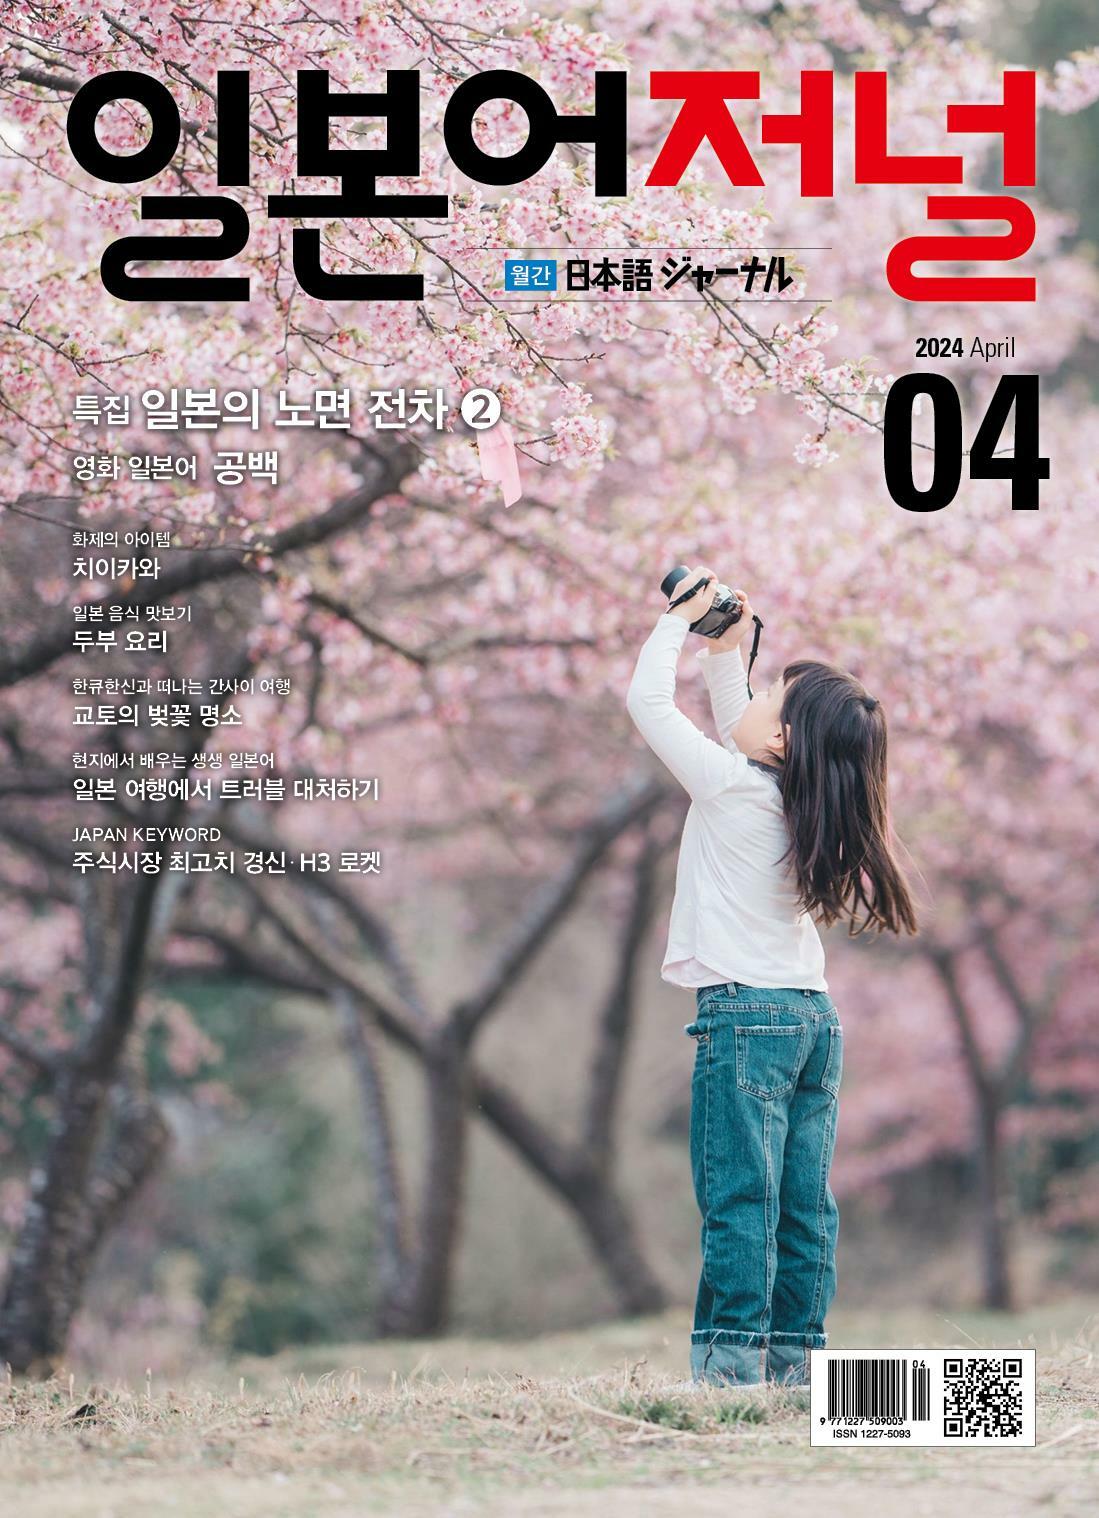 월간 일본어저널 (1년 정기구독) - 듣는 즐거움, 읽는 재미, 쌓이는 실력